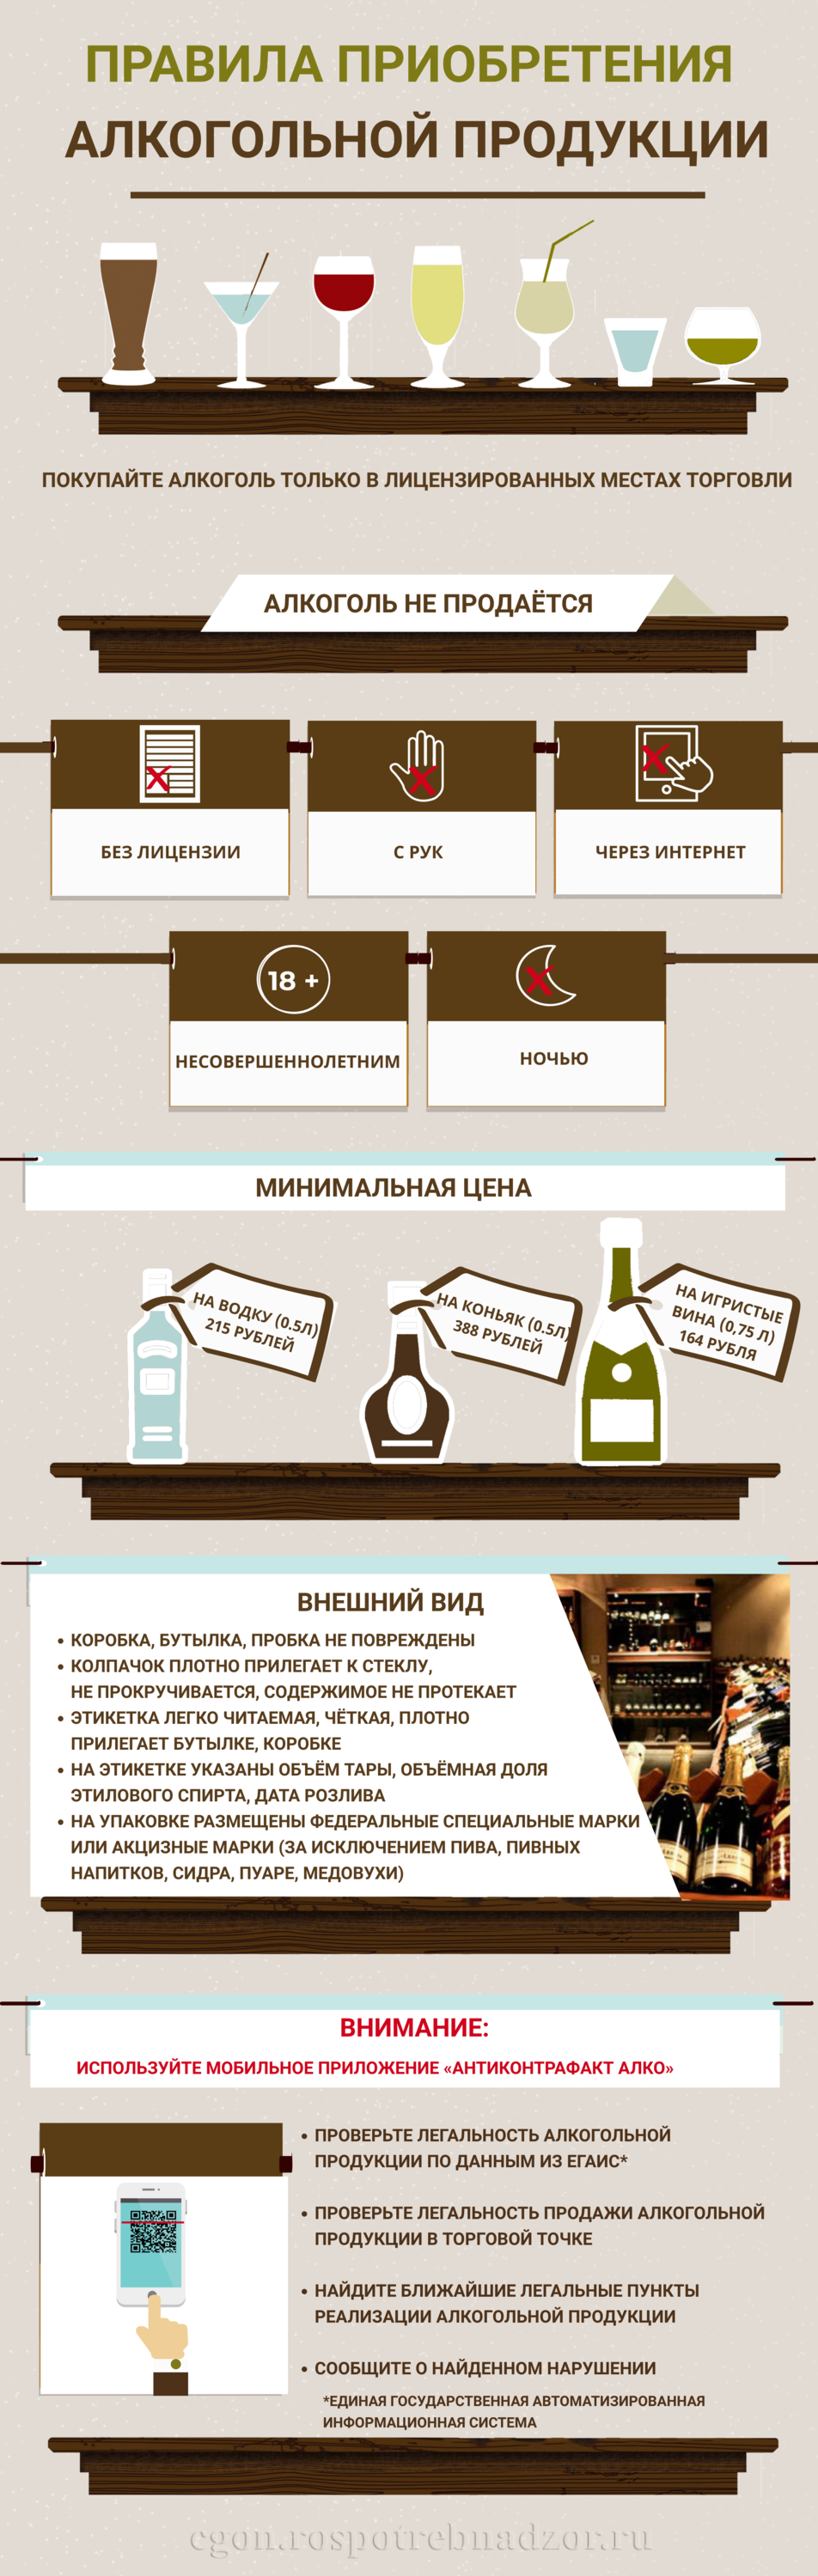 Правила приобретения алкогольной продукции